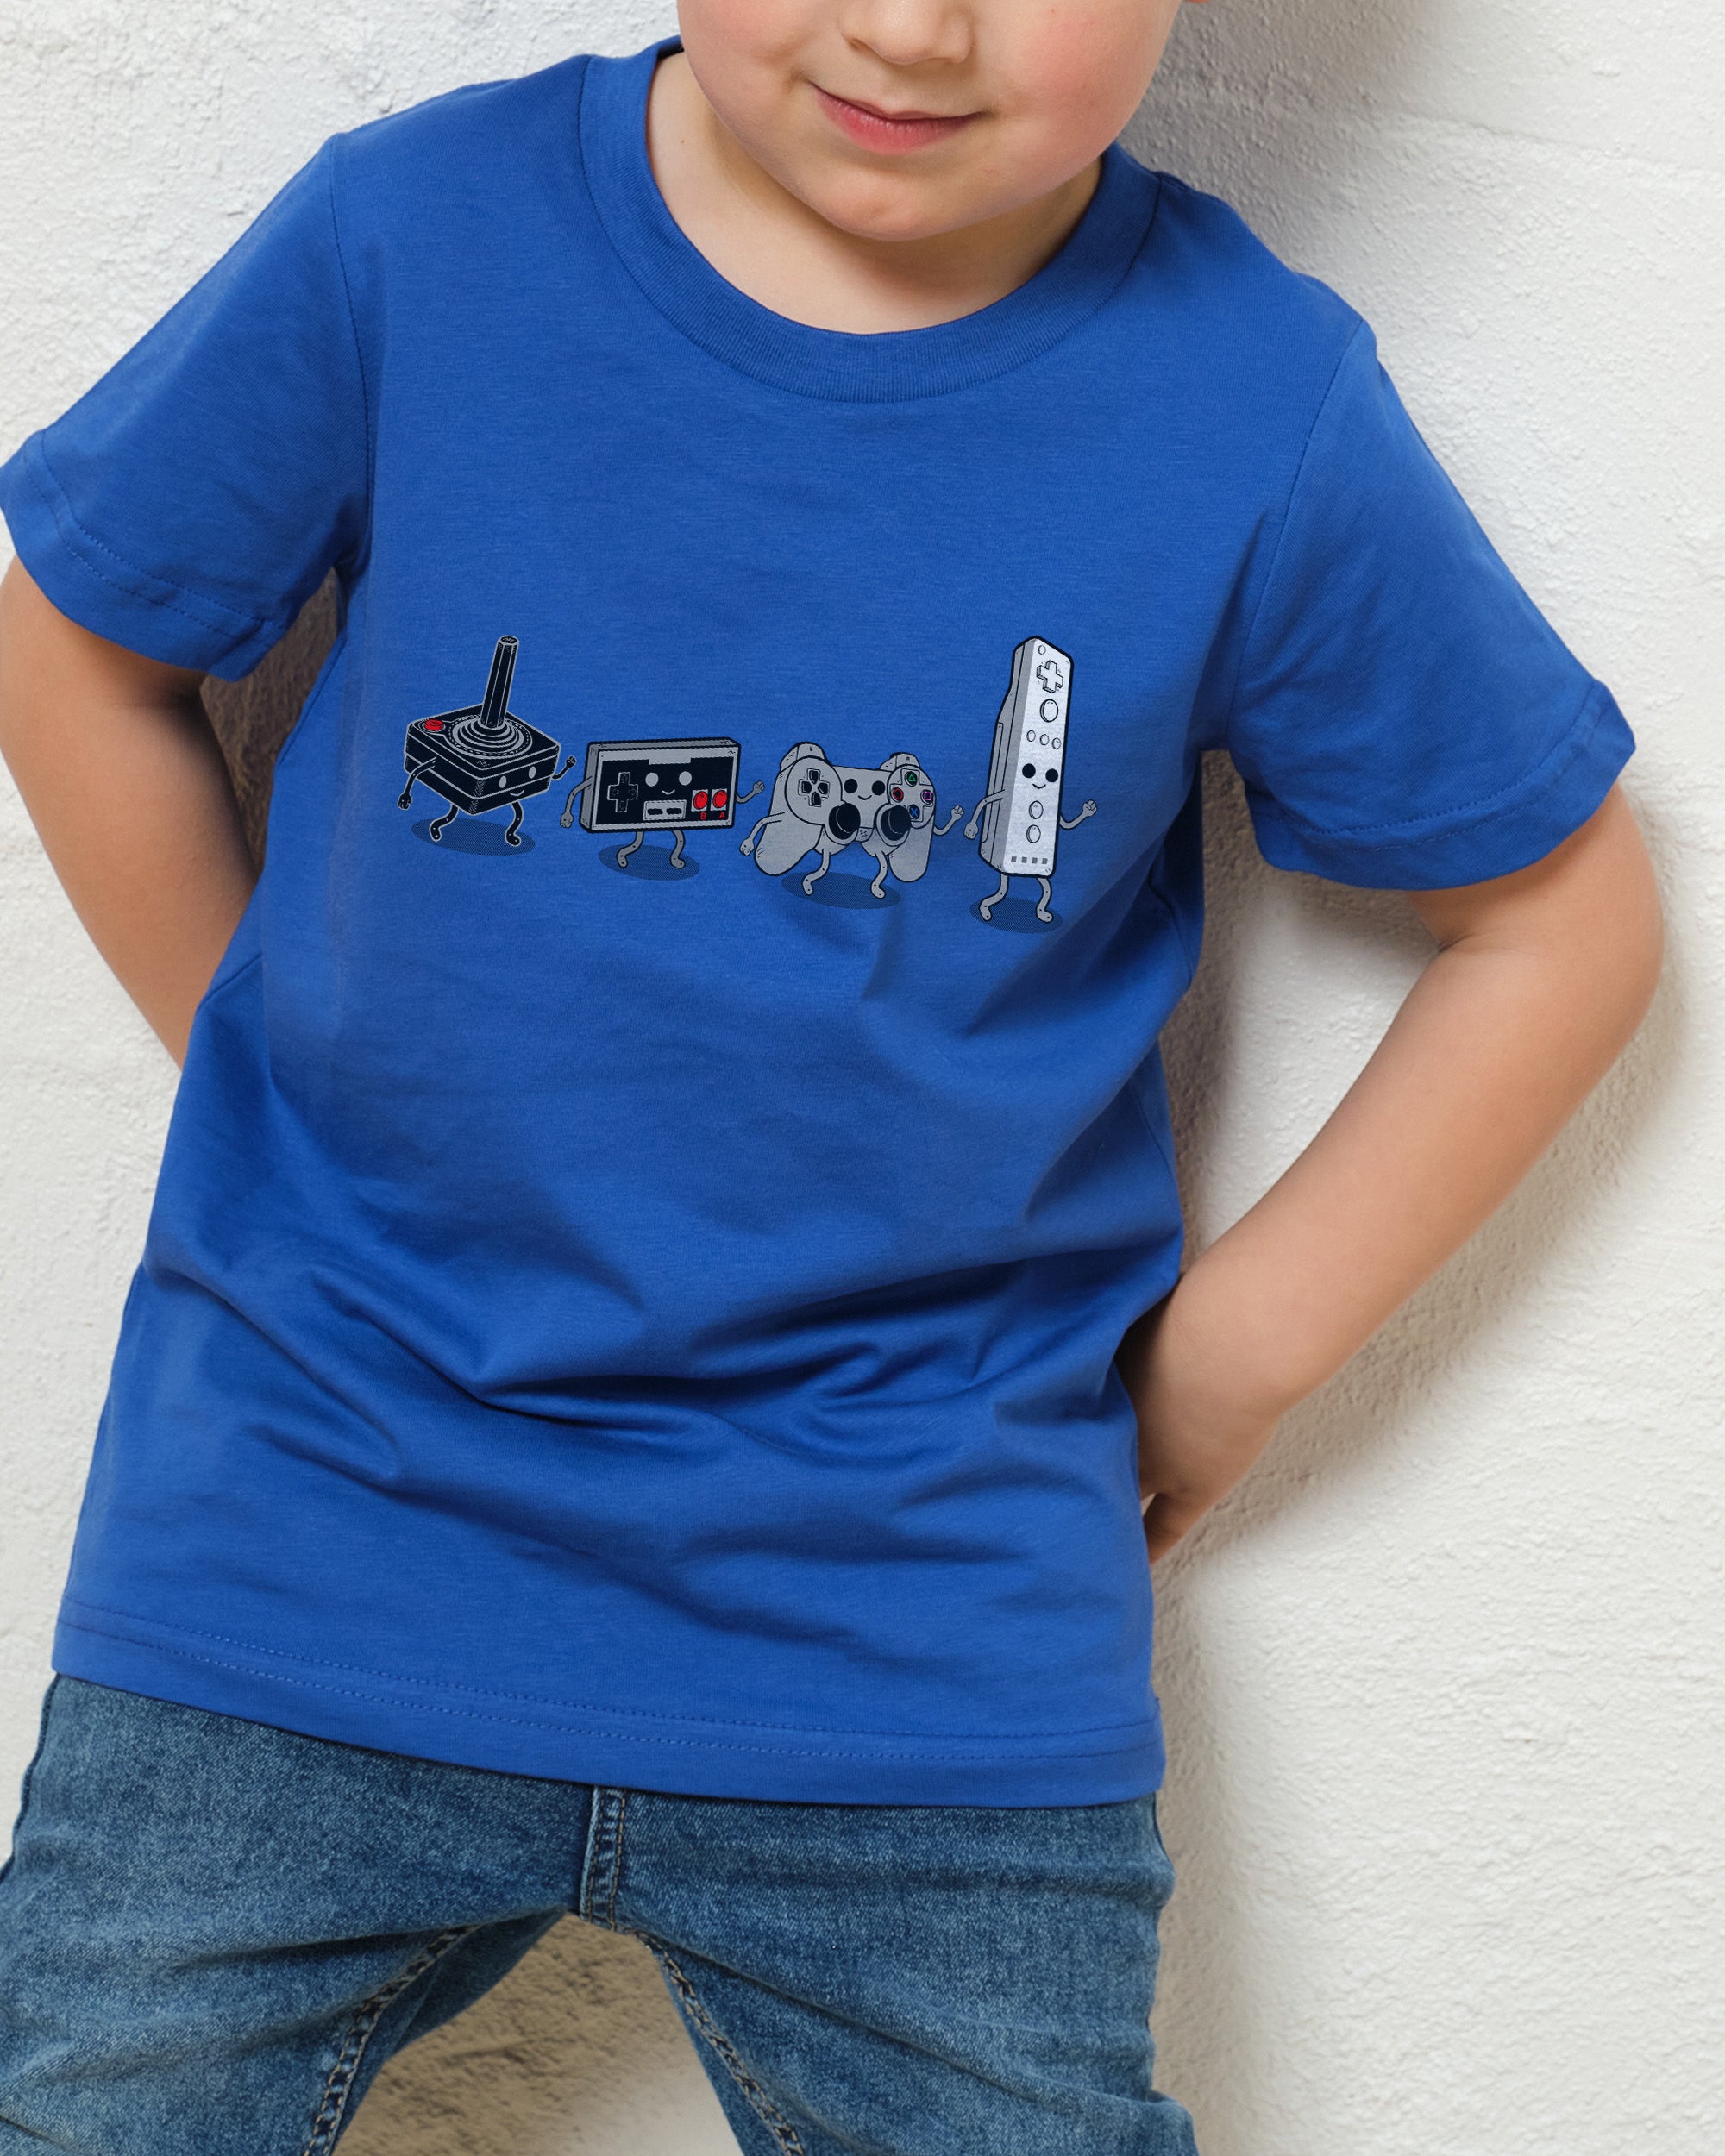 Controller Evolution Kids T-Shirt